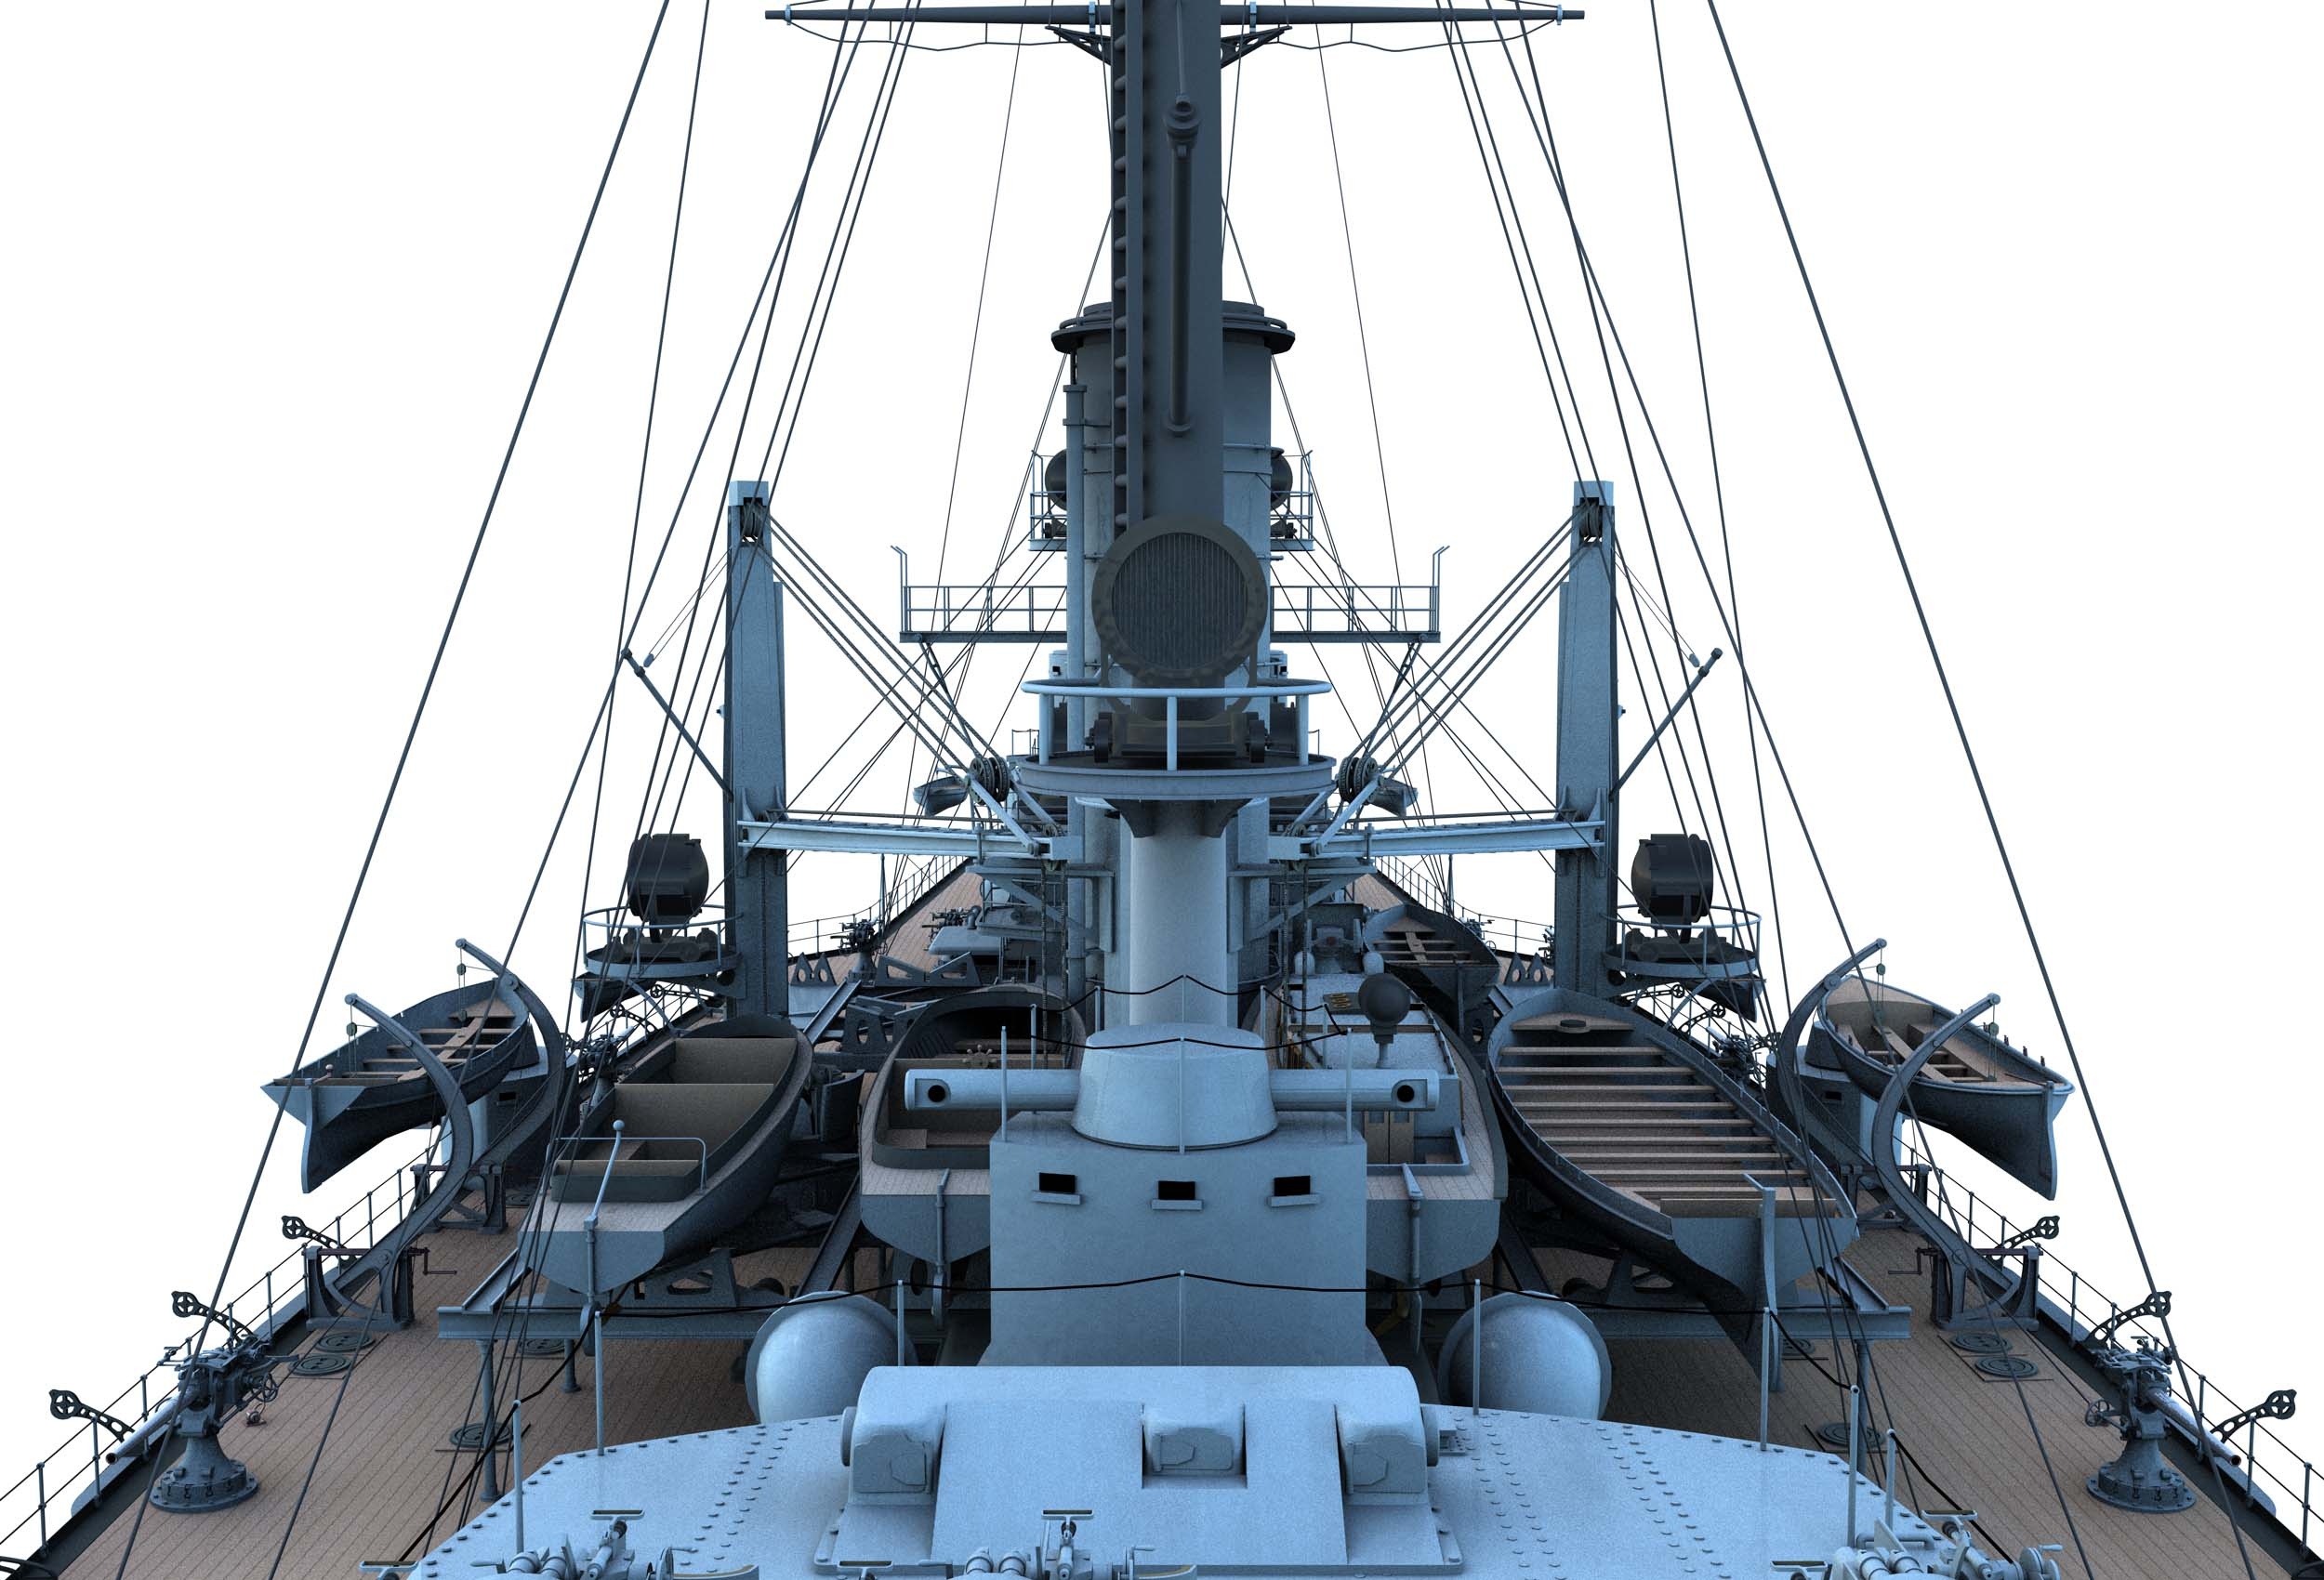 https://0901.nccdn.net/4_2/000/000/04d/e26/CK41-Partial-Ship-View-from-Turret-III-forward-2500x1700.jpg